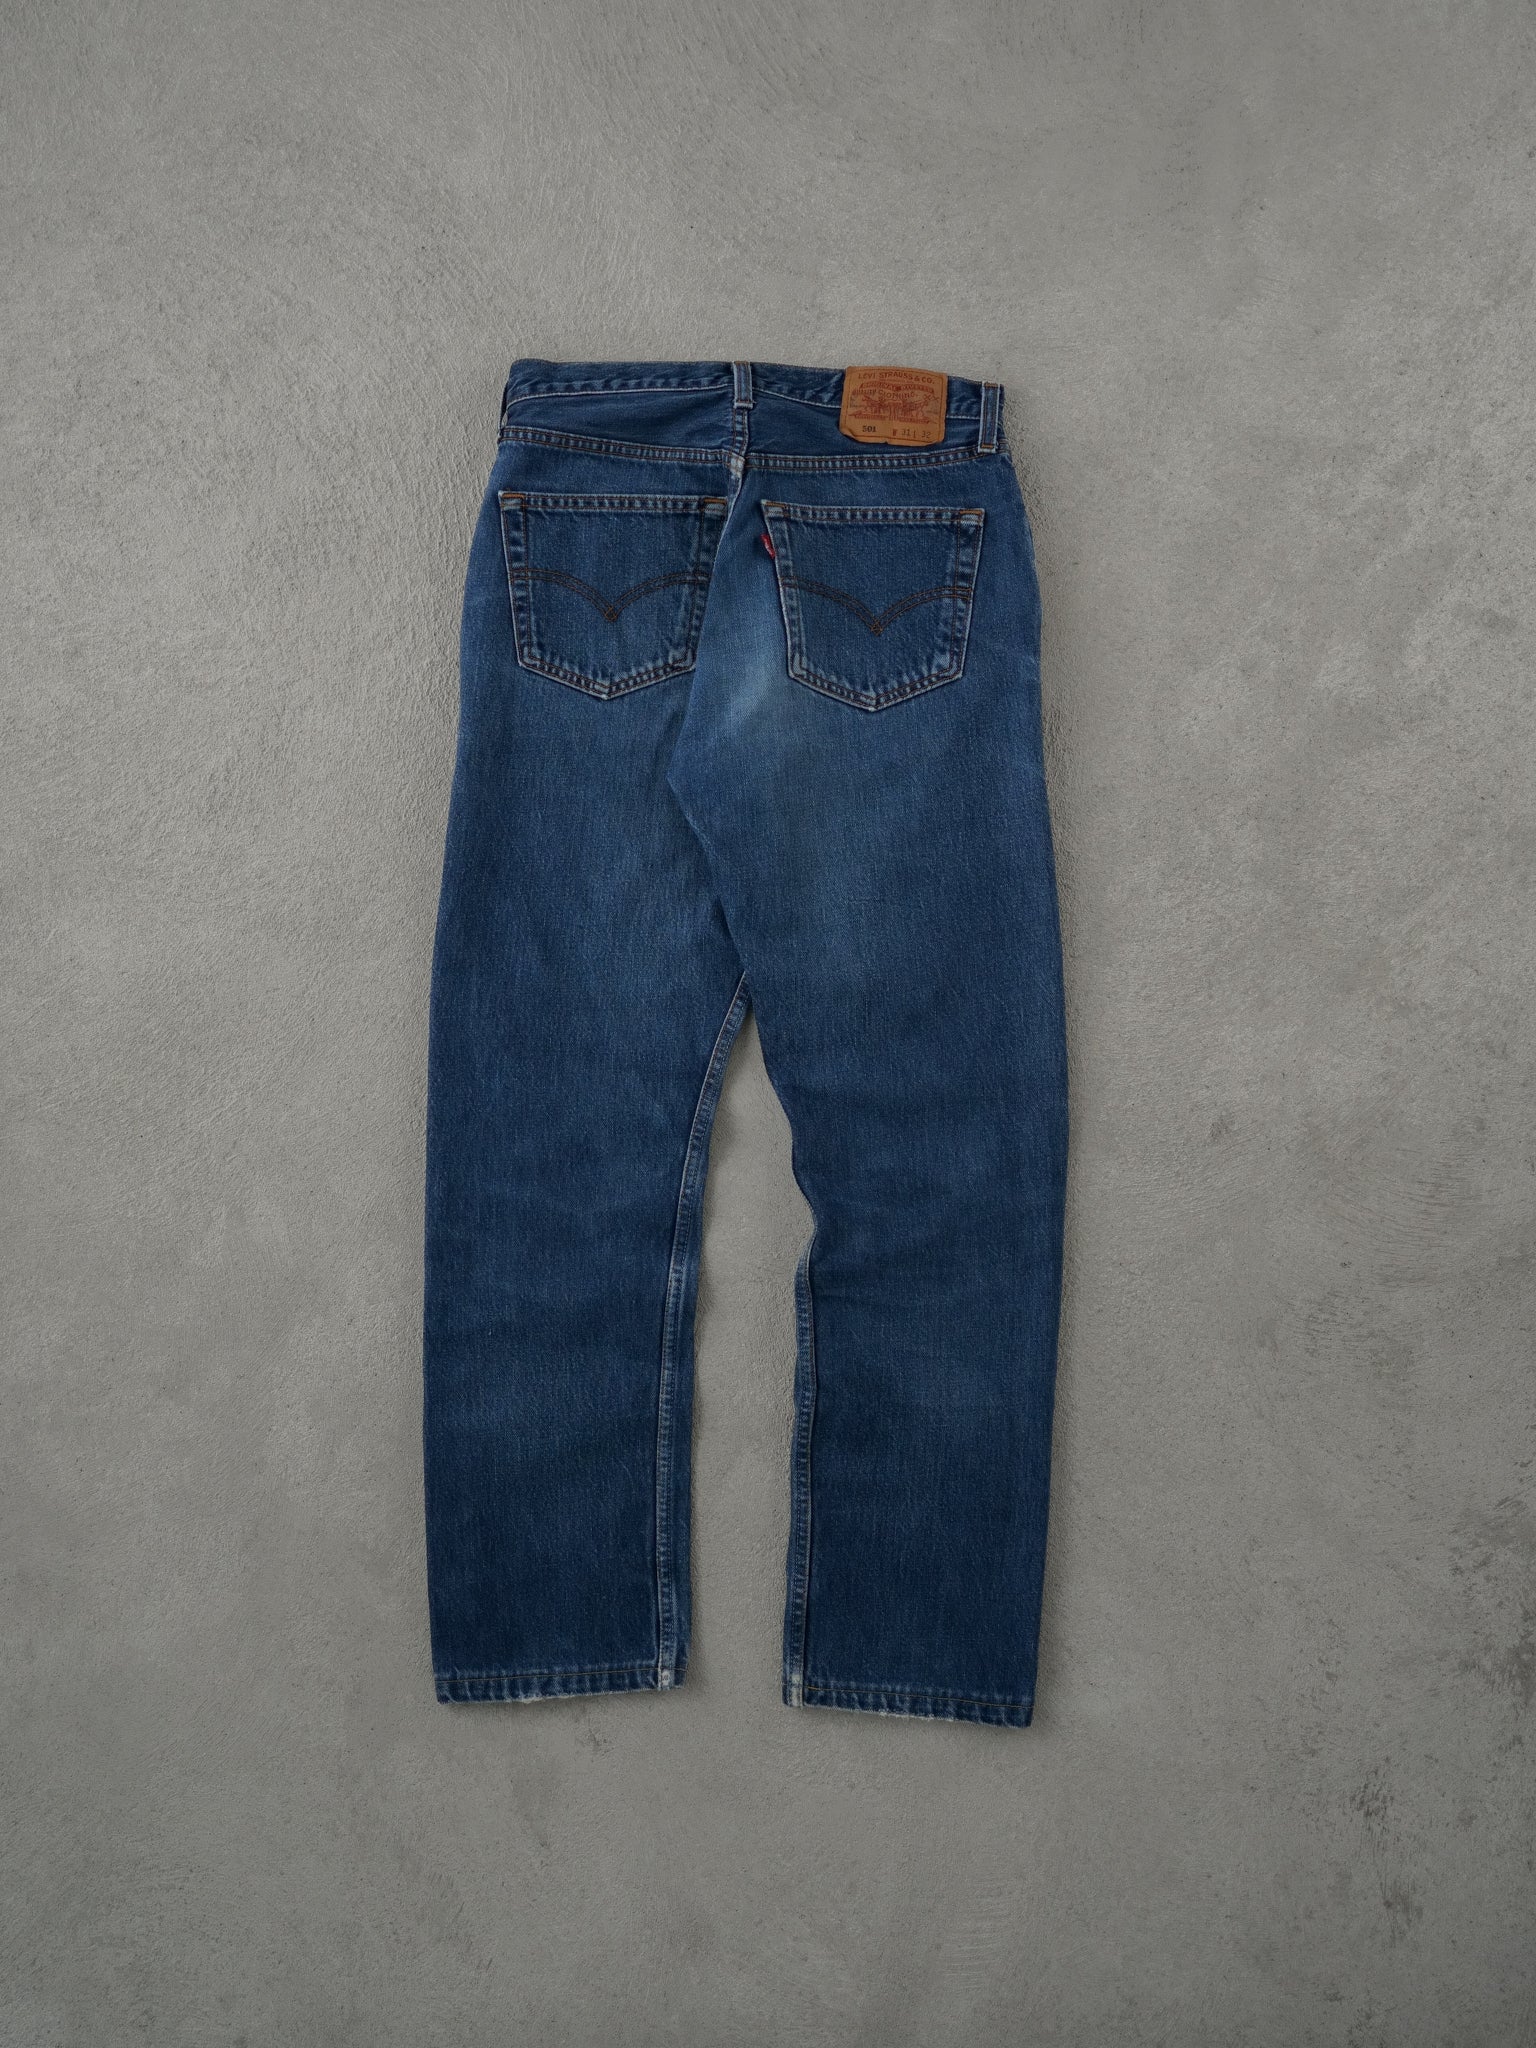 Vintage 90s Blue Levi's 501 Denim Jeans (31x30)